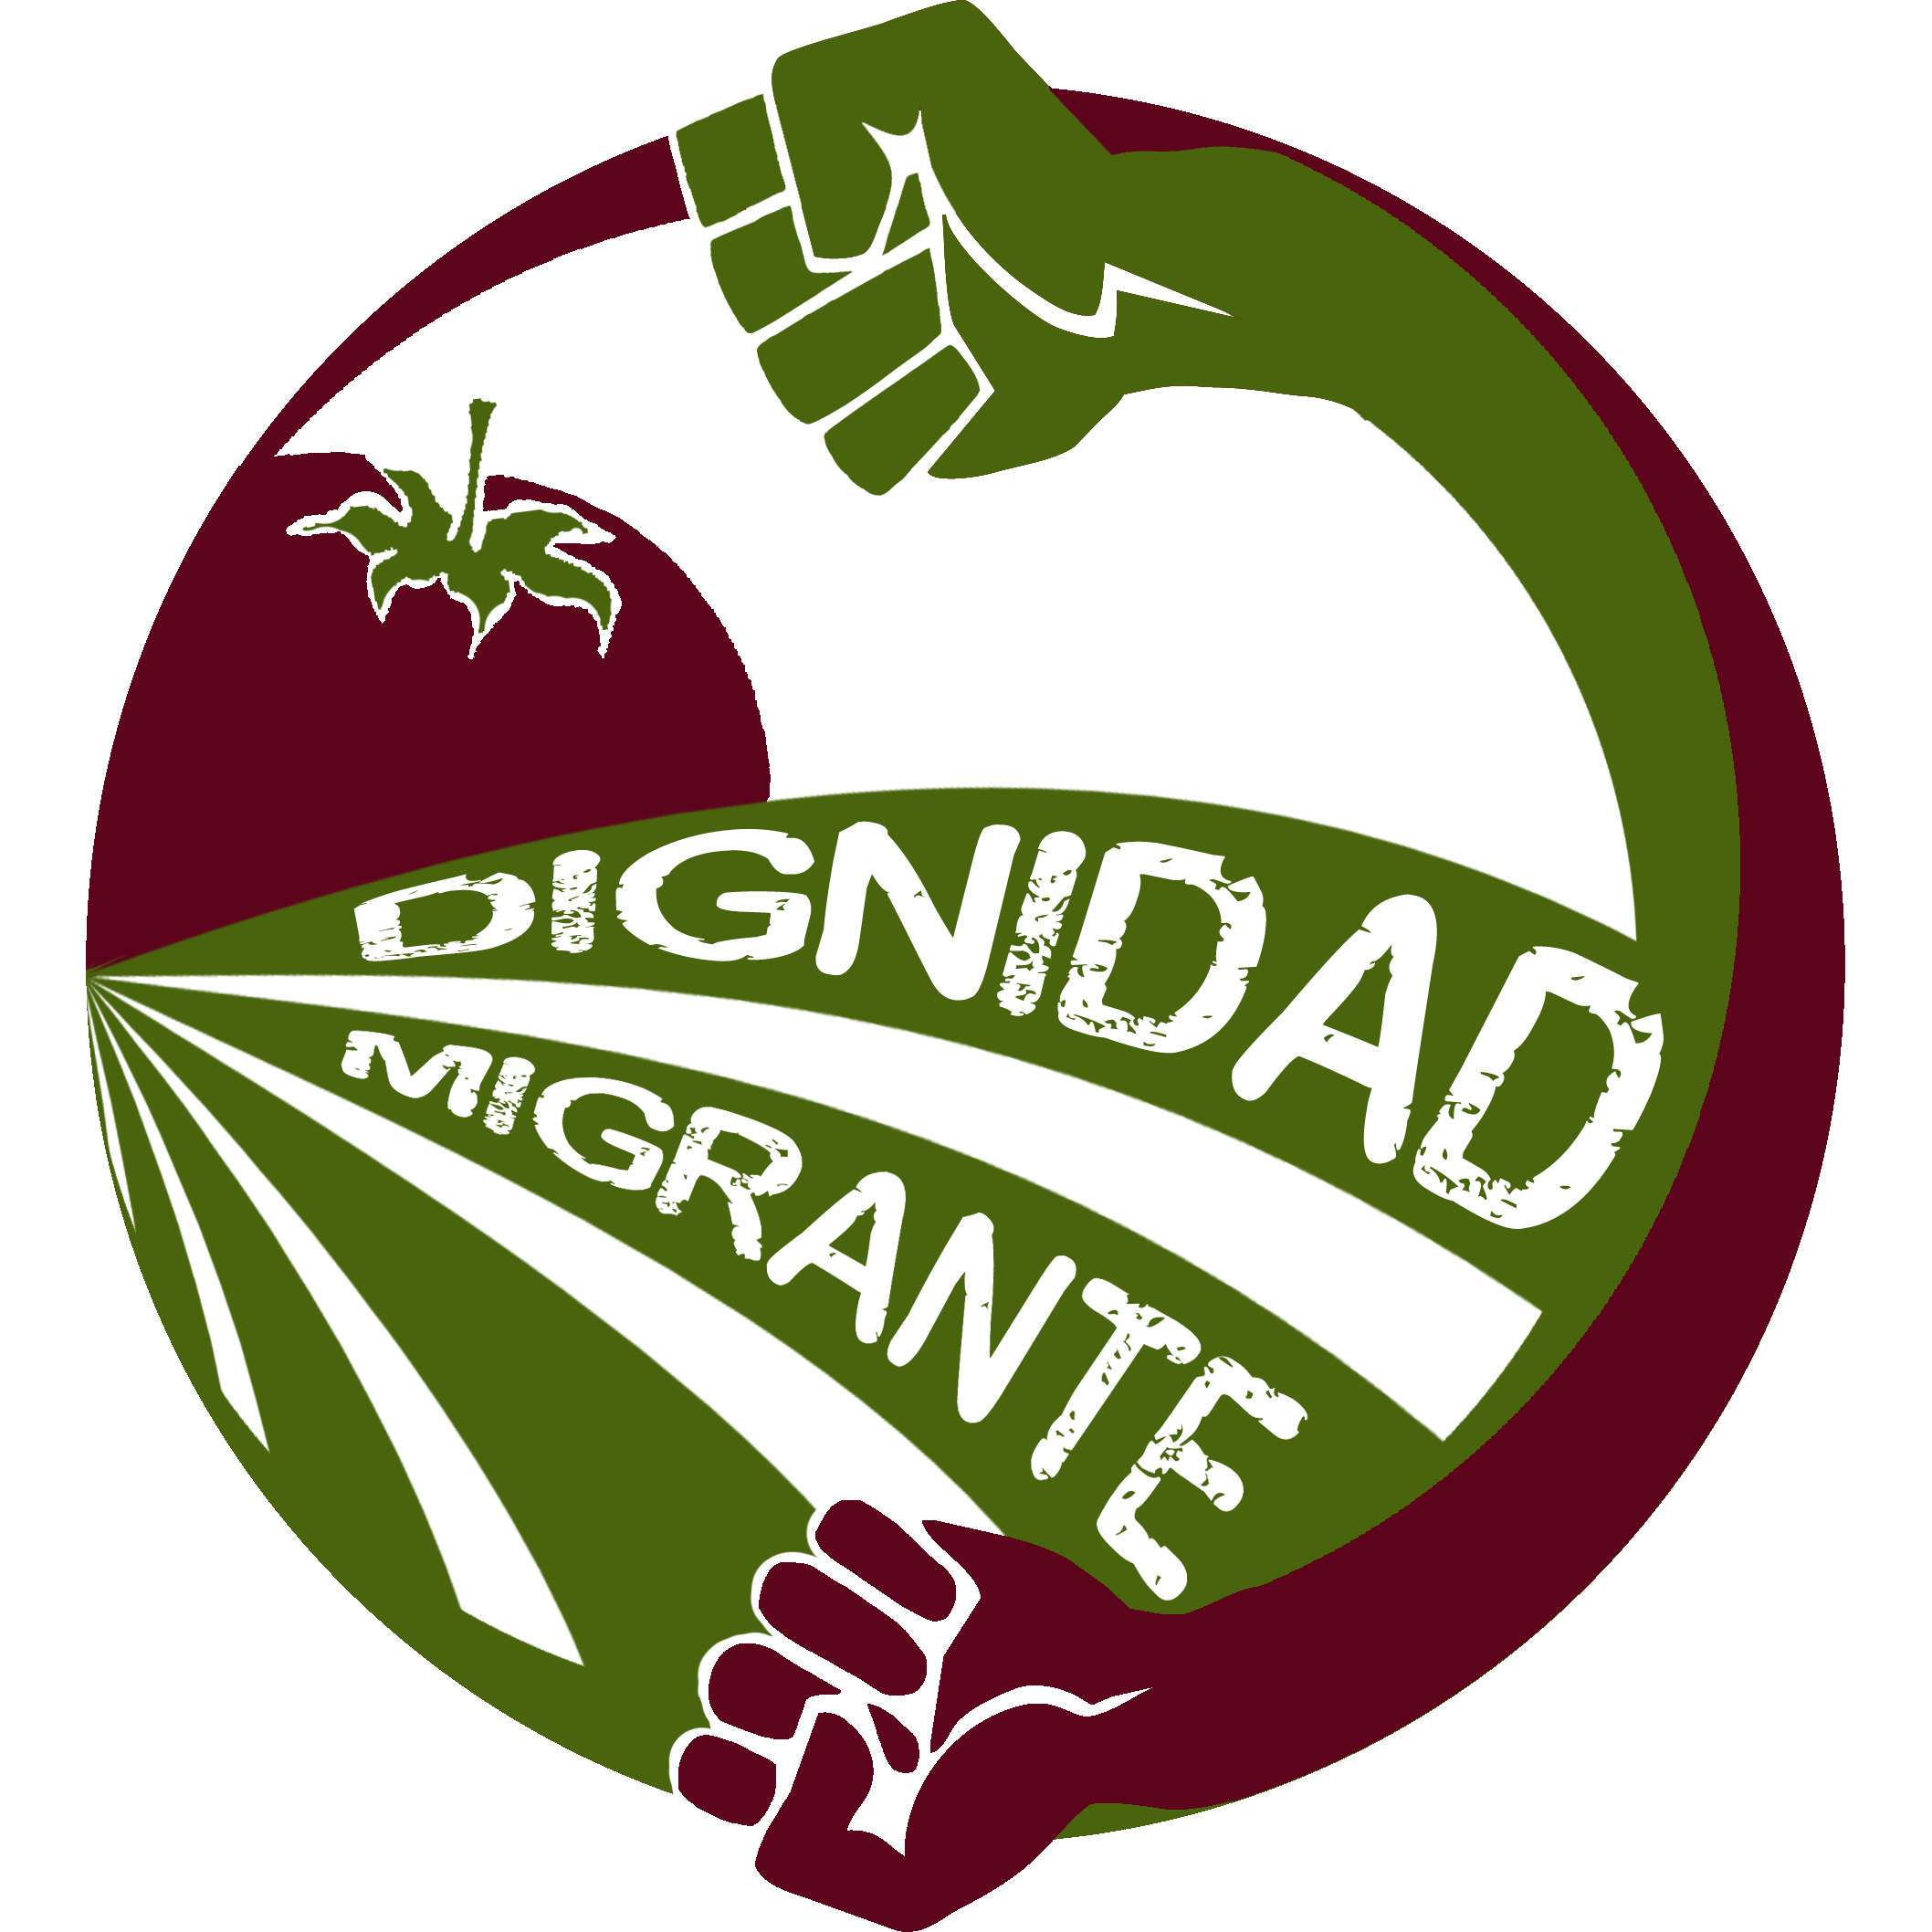 Dignidad Migrante Society logo